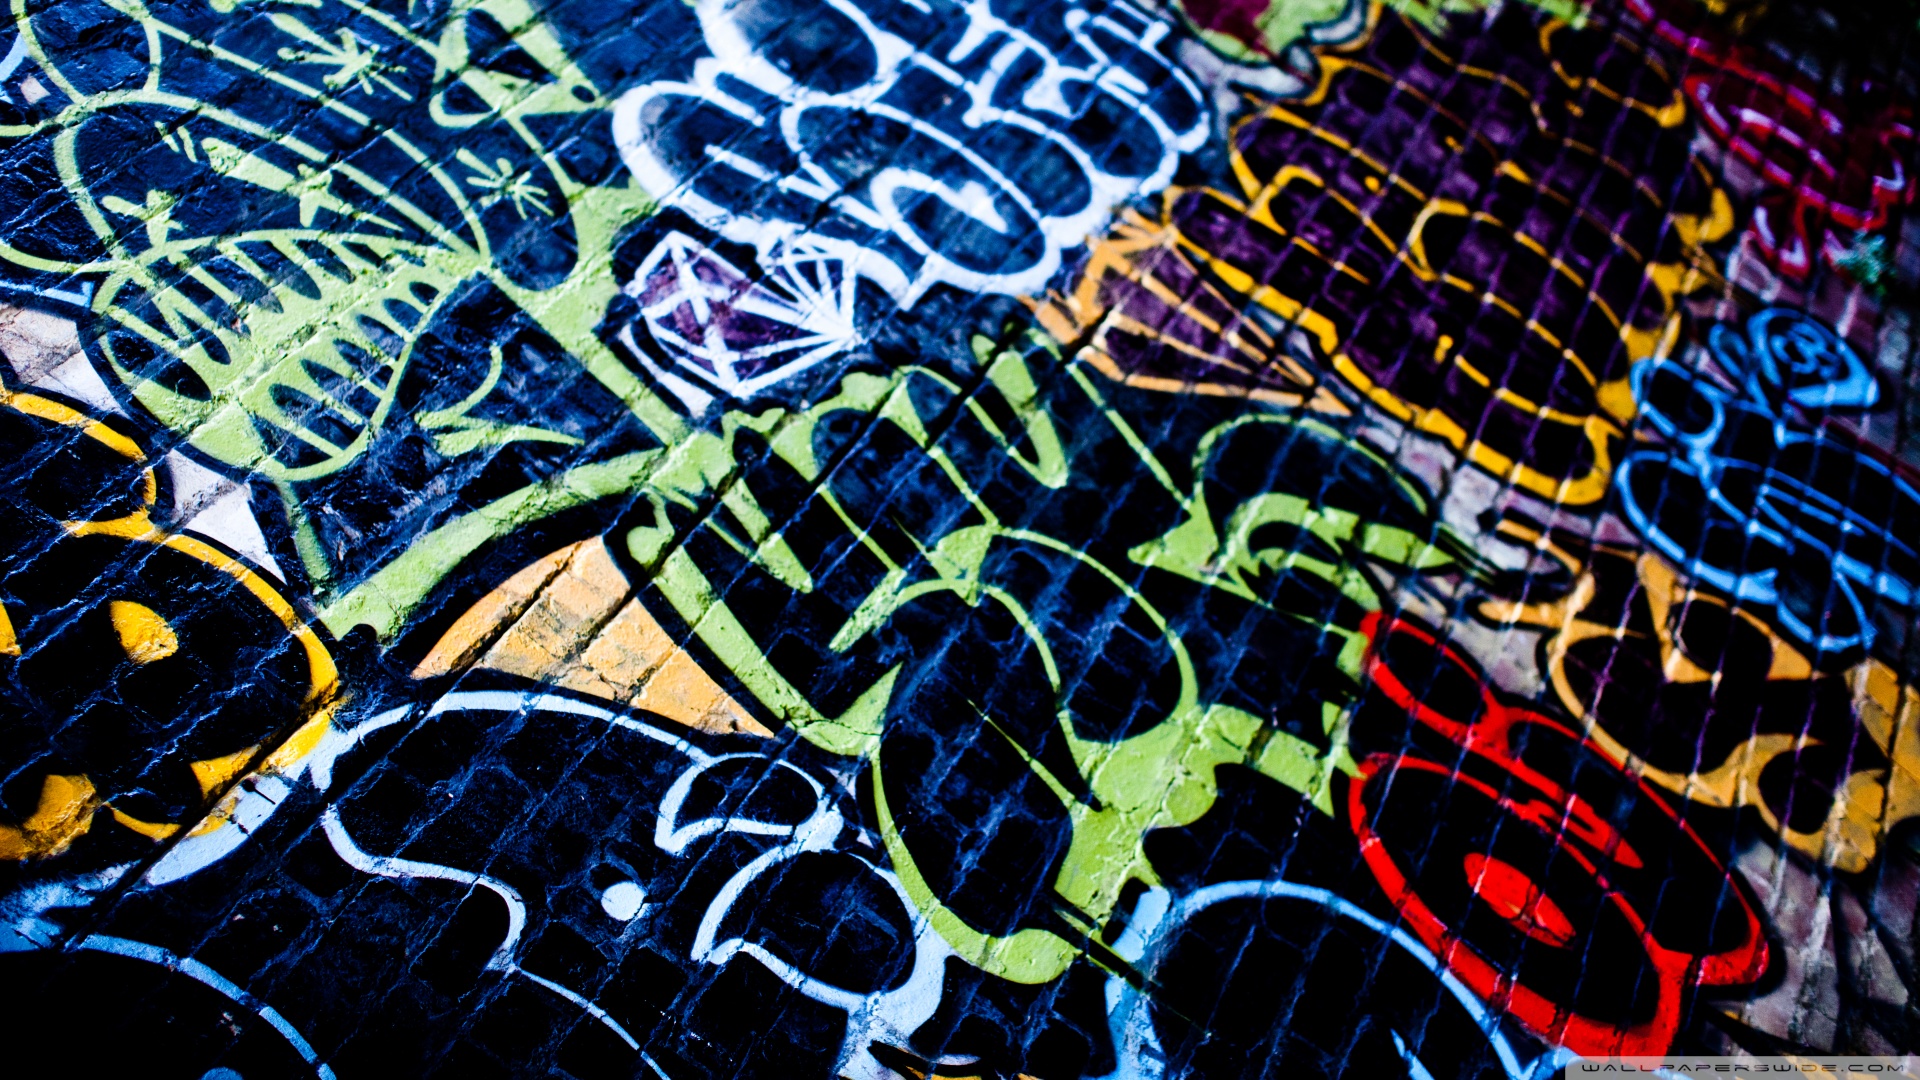 Download Graffiti 3 Wallpaper 1920x1080 Wallpoper 442107